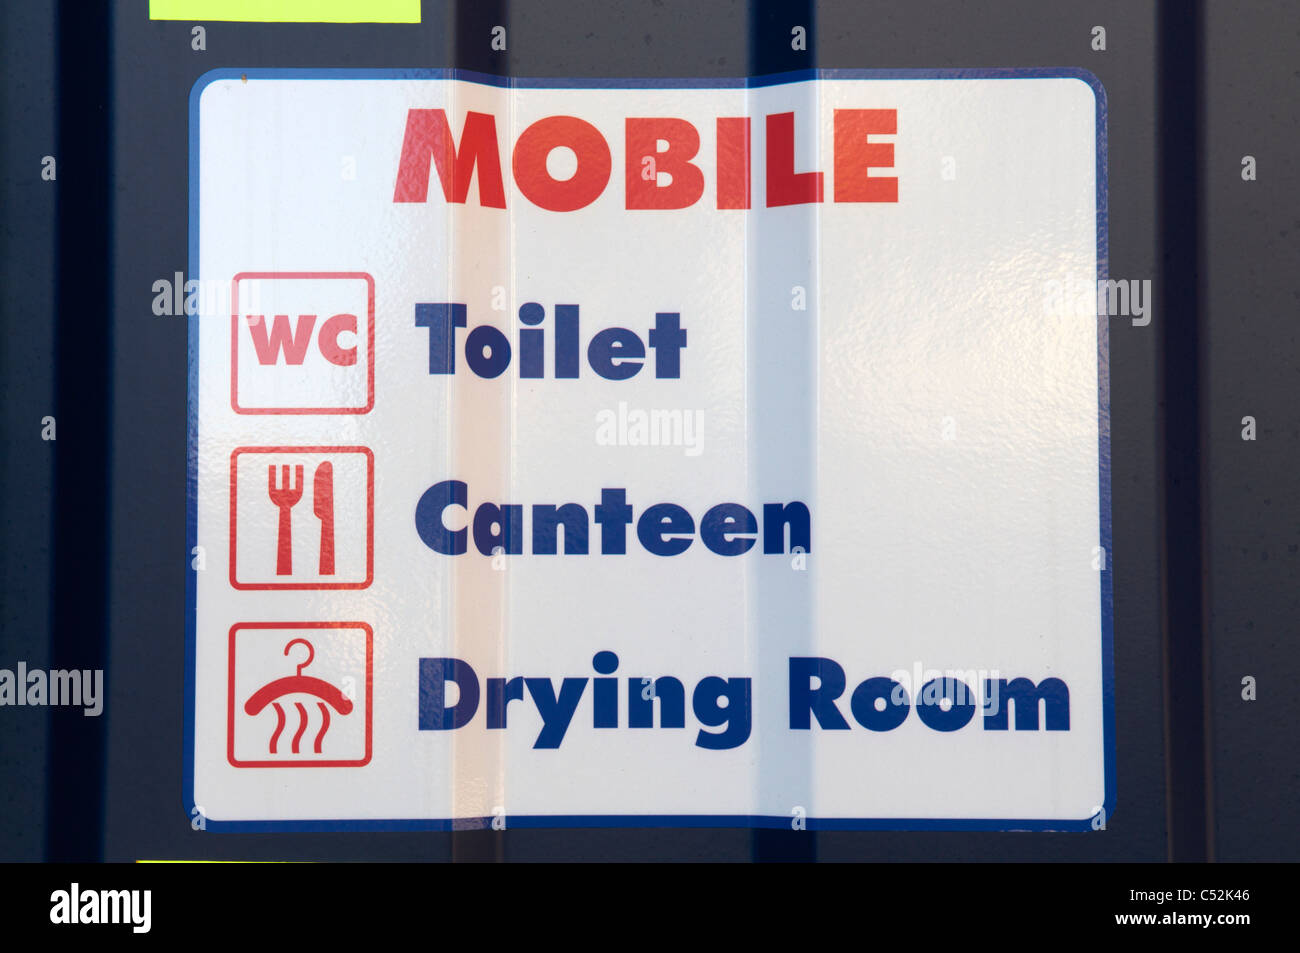 Mobile toilet Stock Photo